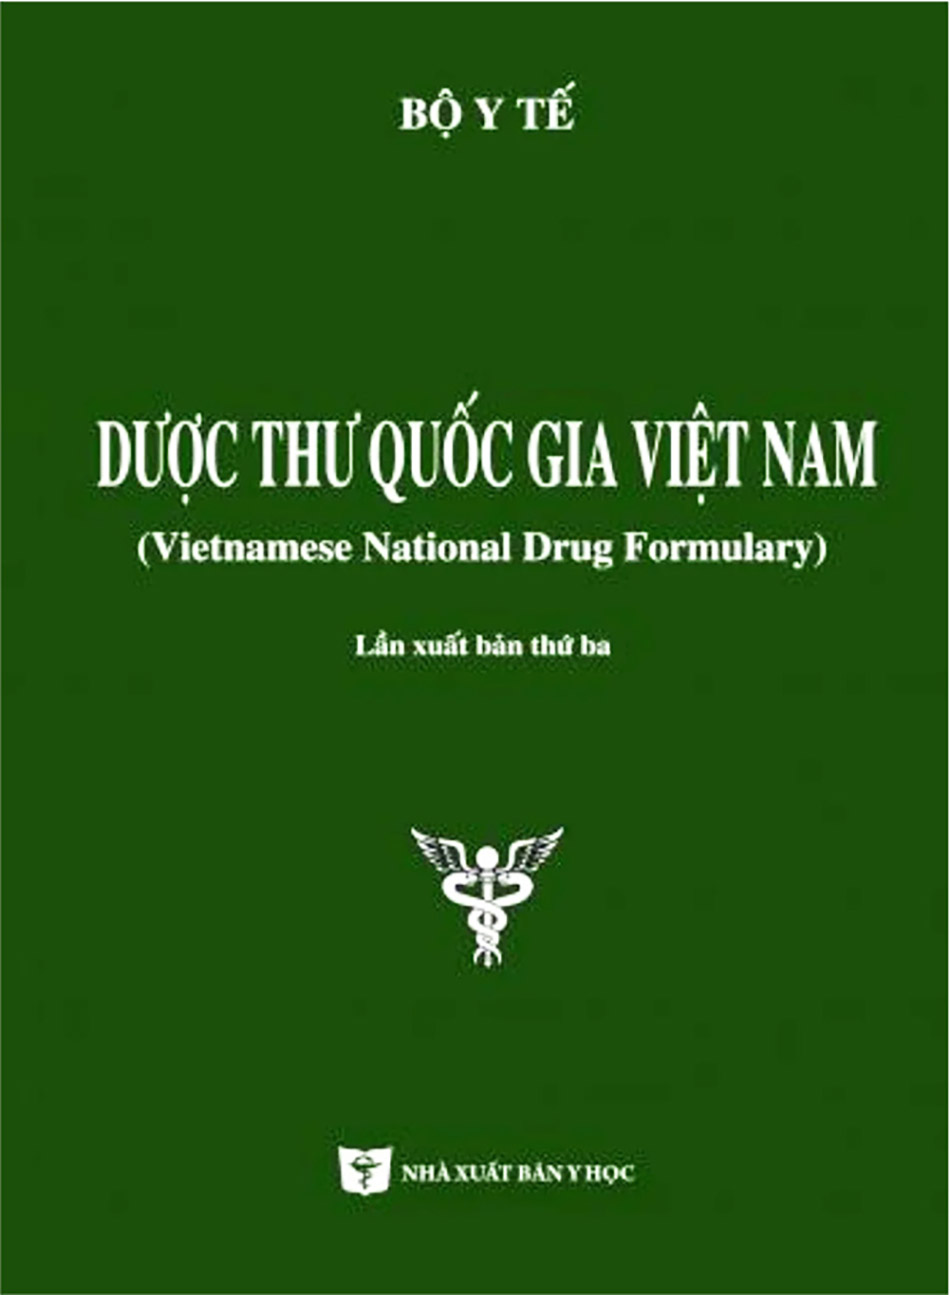 Dược thư Quốc gia Việt Nam tái bản lần thứ ba